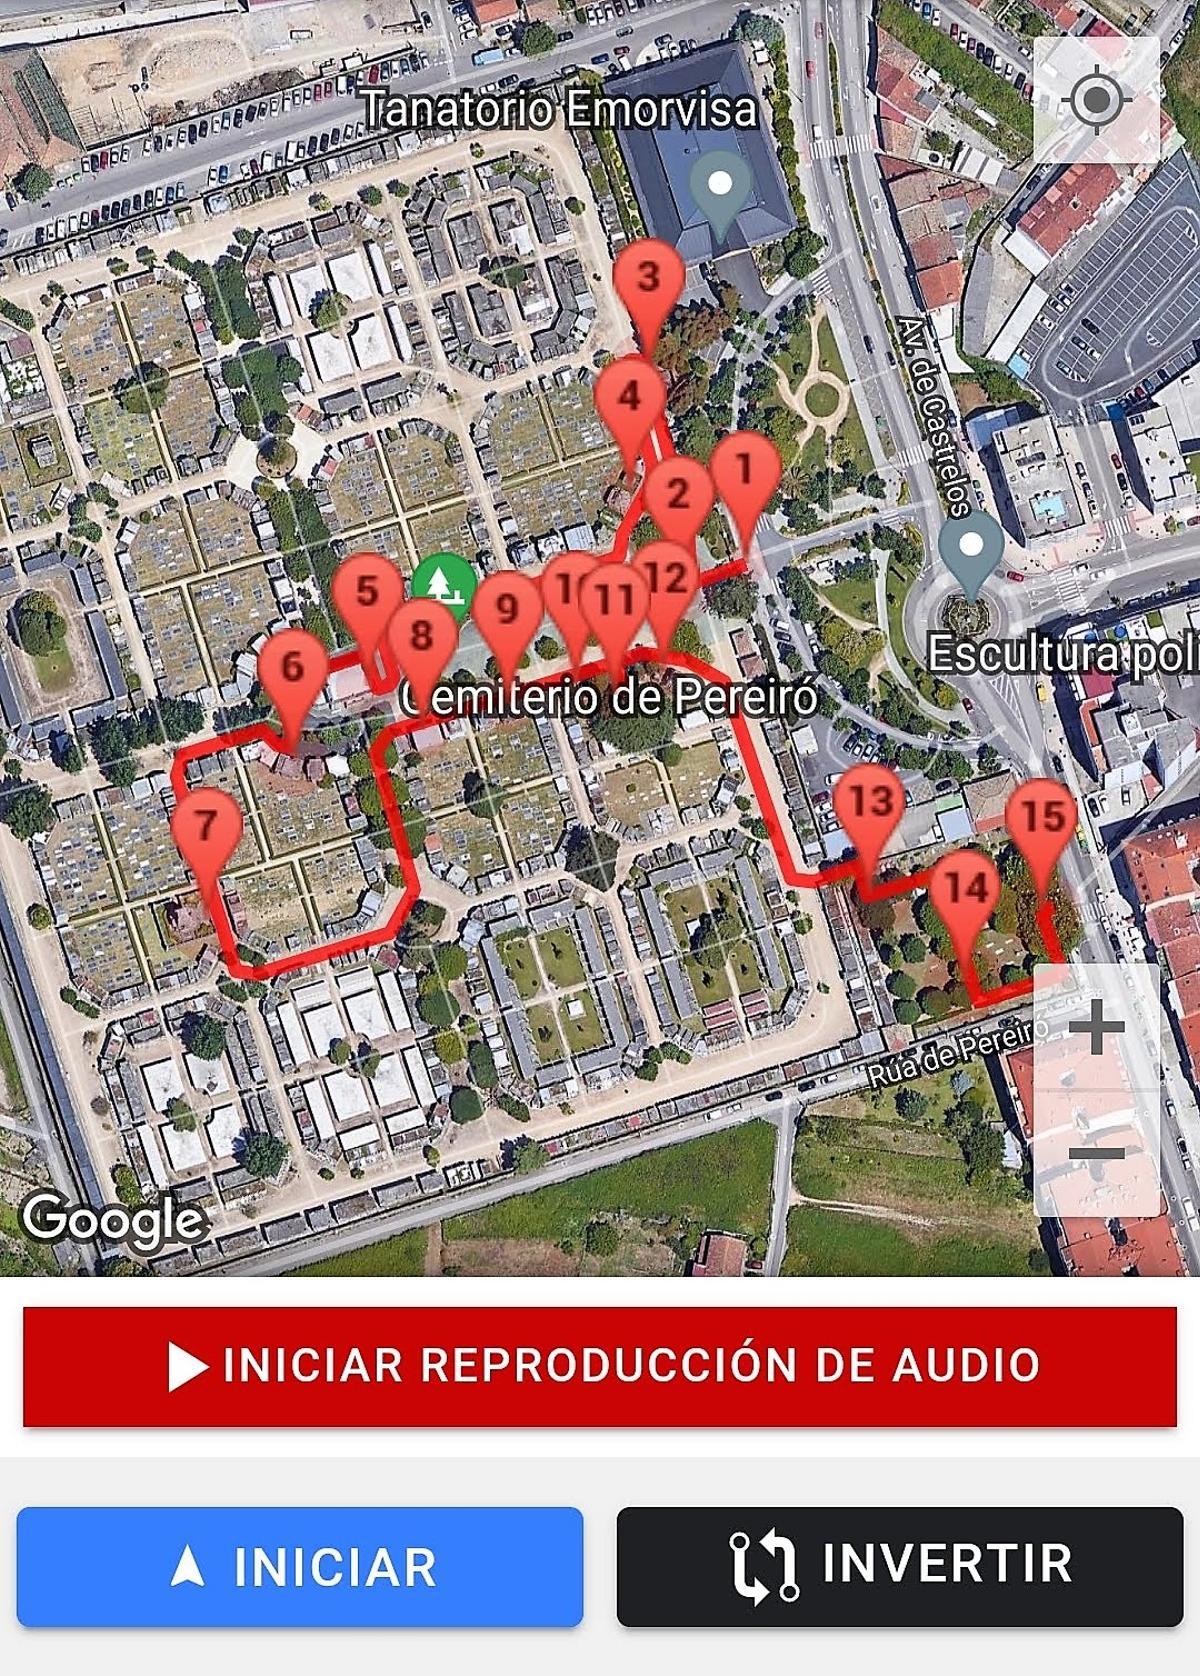 Mapa con los puntos de interés del cementerio de Pereiró de Vigo a través de los que se puede realizar la ruta interactiva